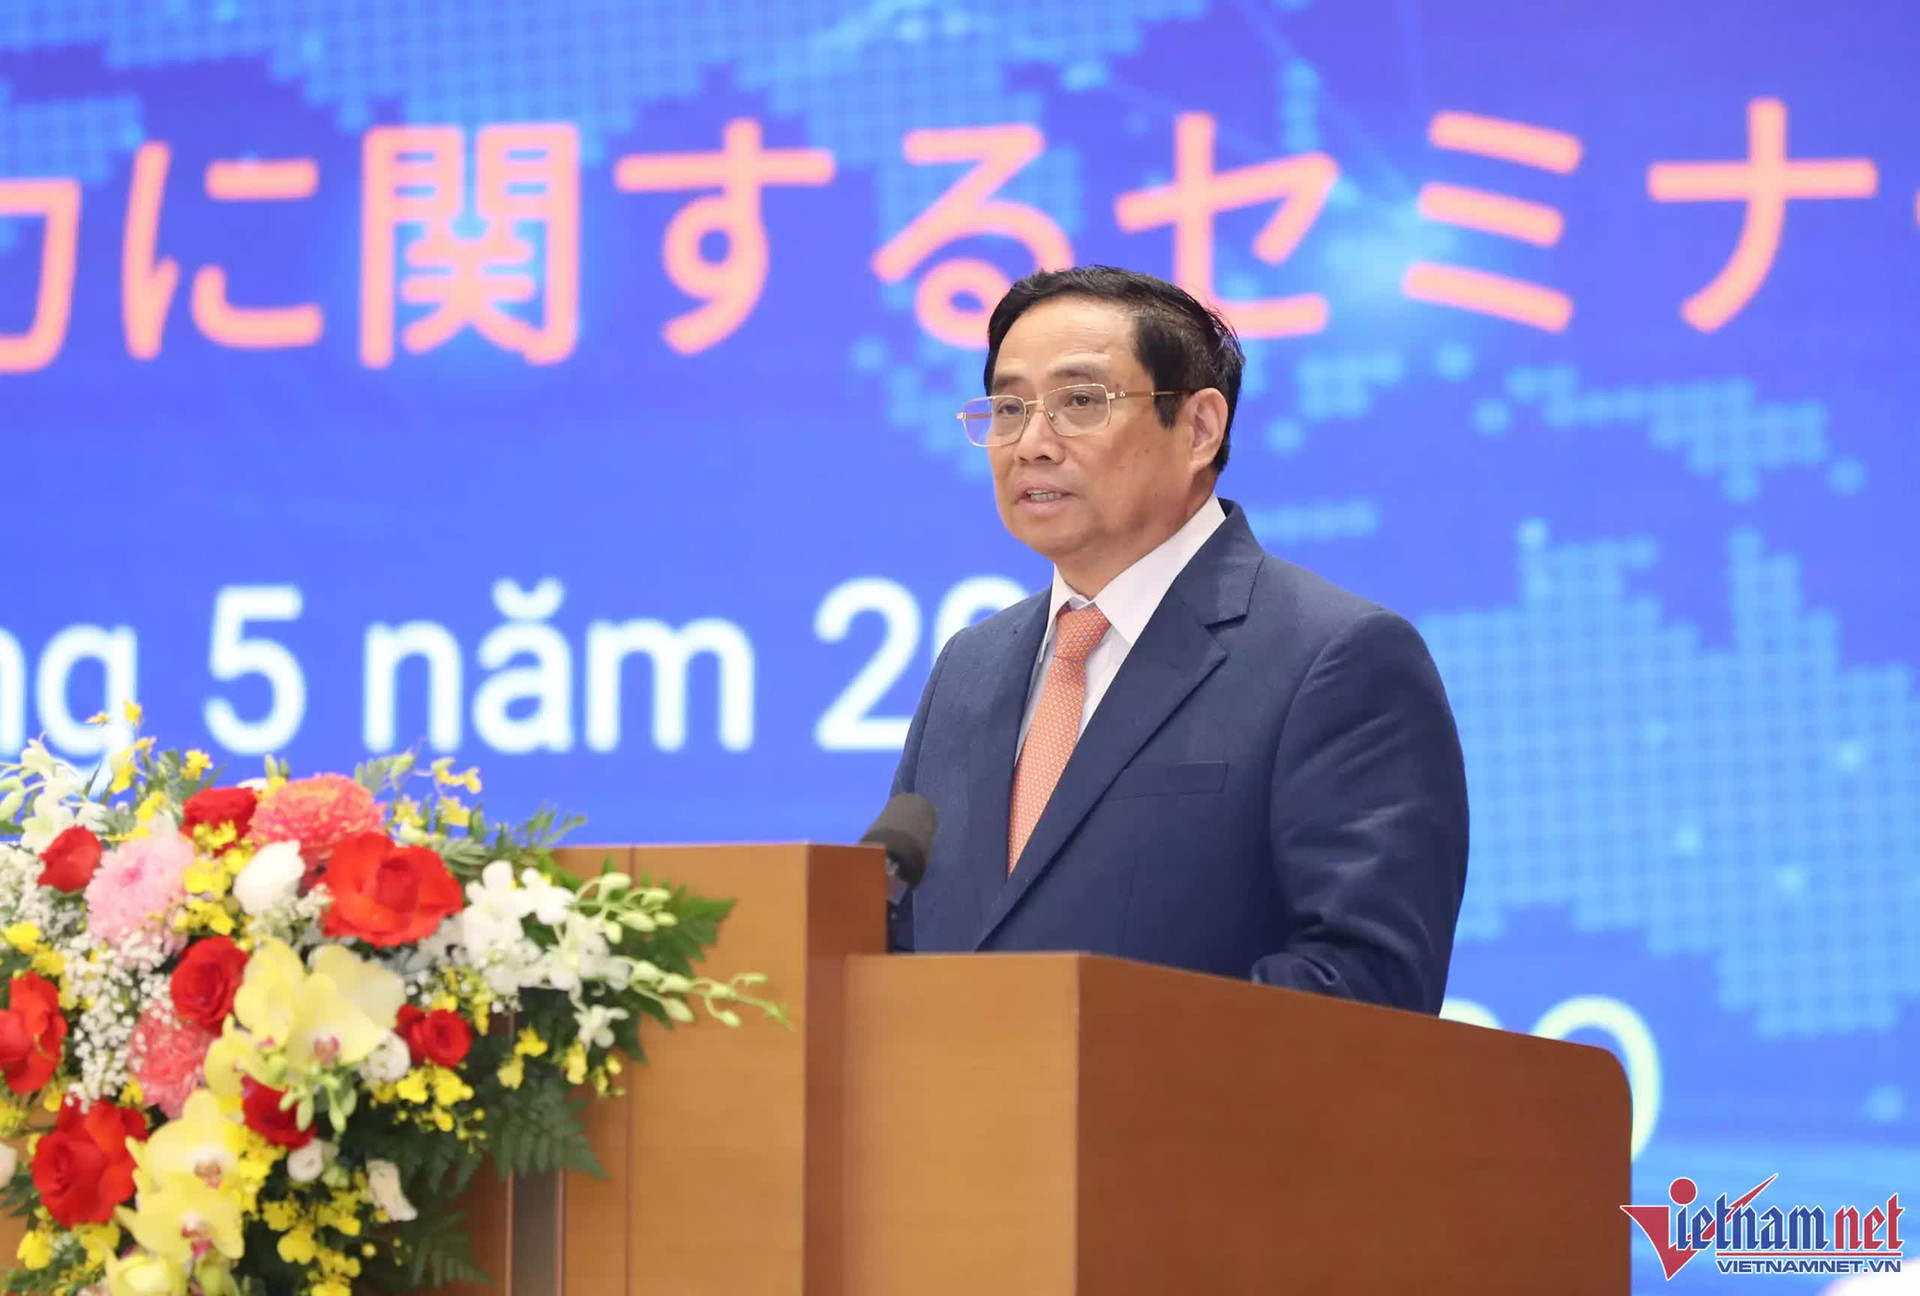 Nhật Bản - Việt Nam kỳ vọng giải quyết các vấn đề kinh tế thông qua chuyển đổi số - Ảnh 1.